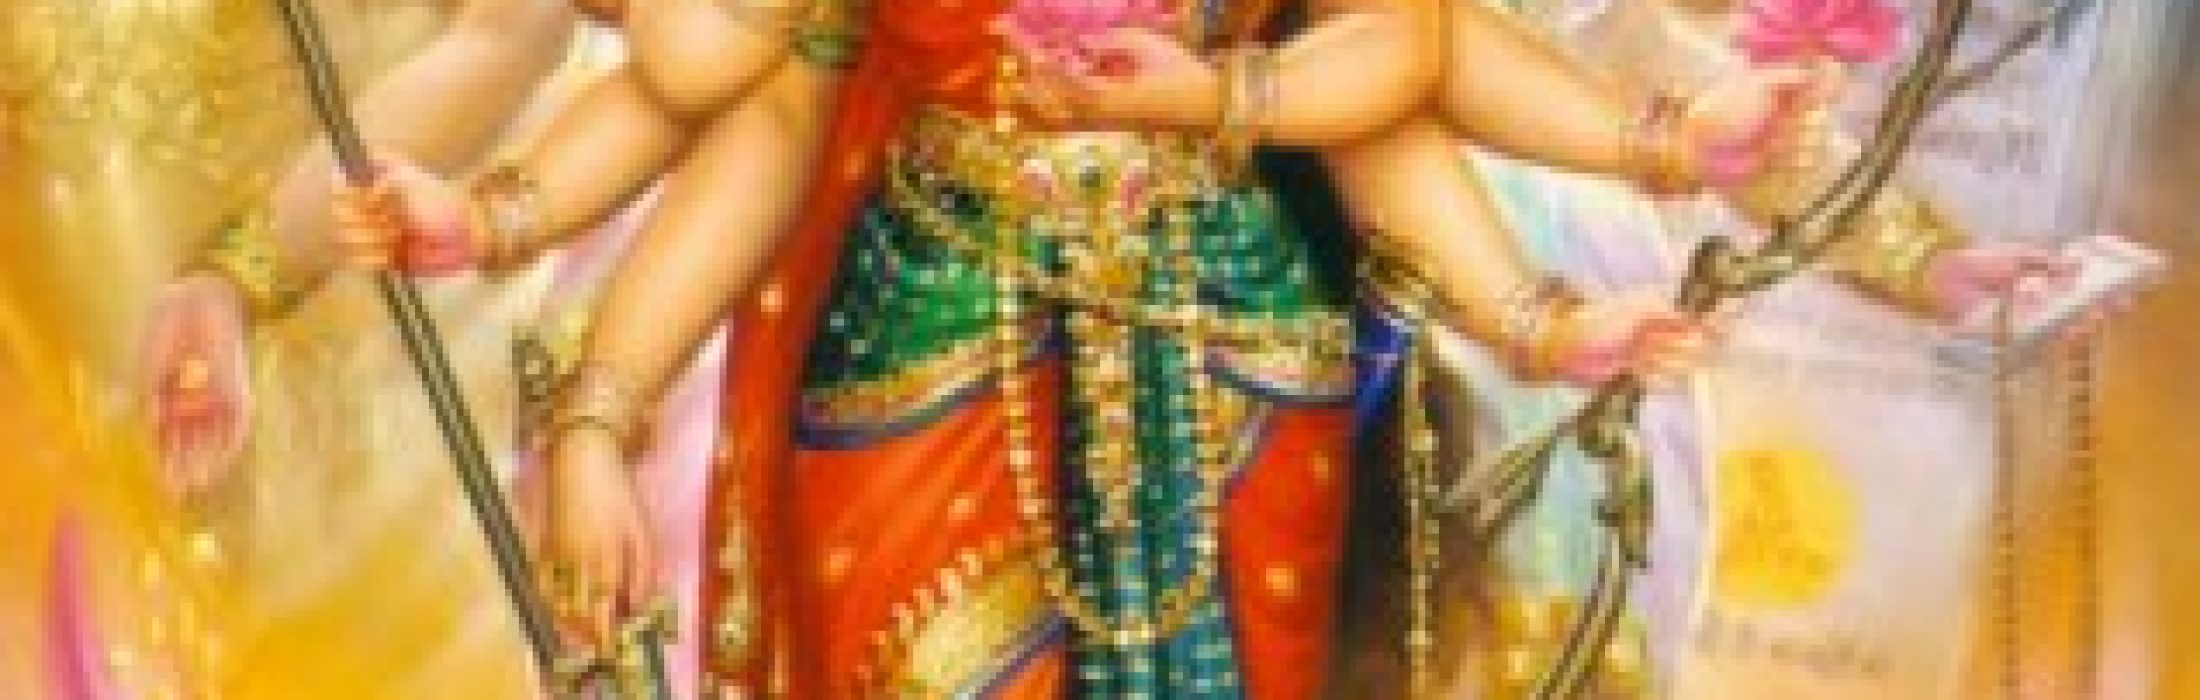 durga-tridevi-lakshmi-parvati-saraswati